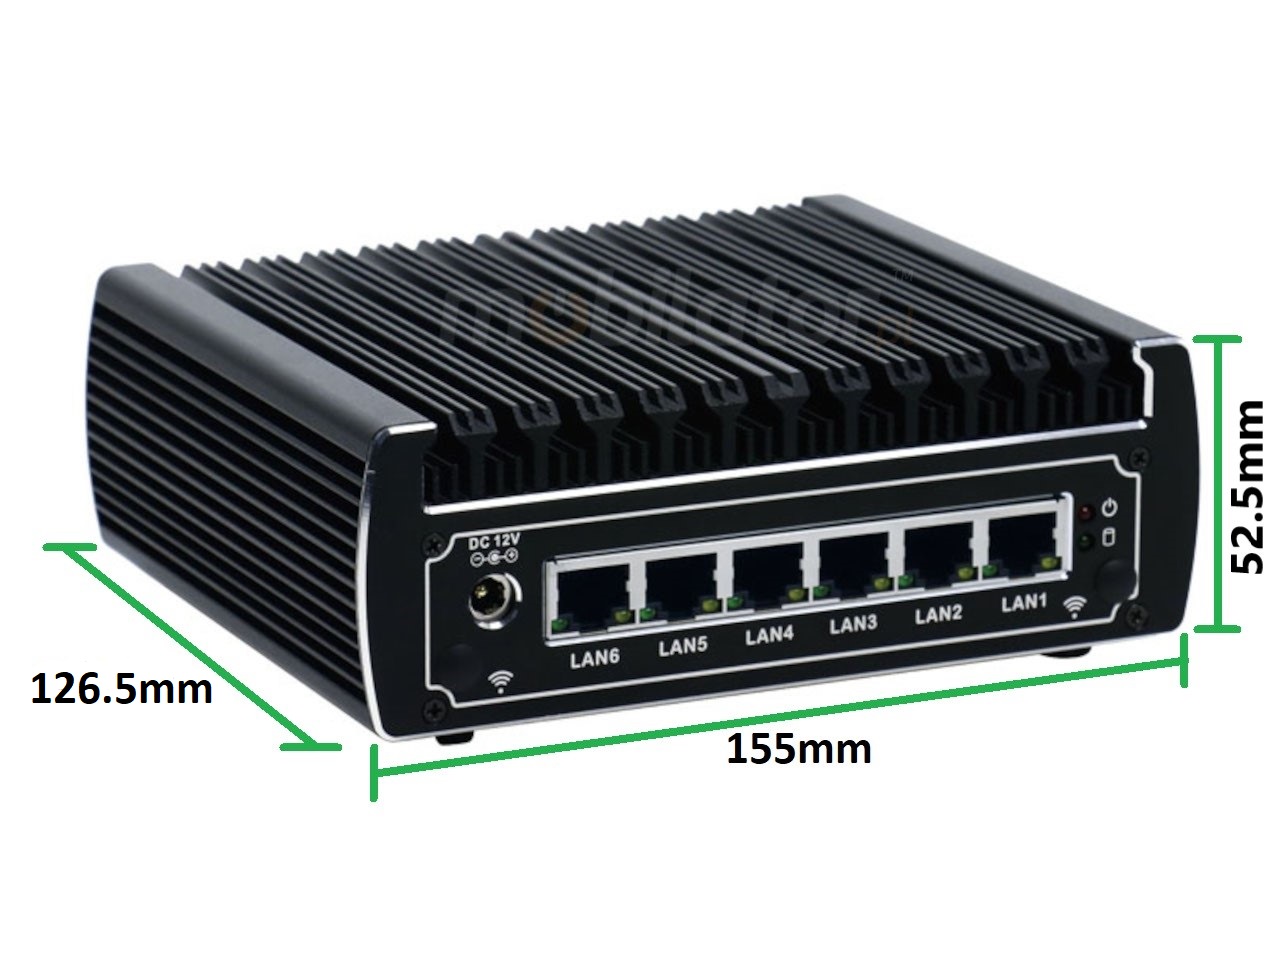   IBOX N133 v.10, wymiary SSD HDD DDR4 WIFI BLUETOOTH, przemysłowy, mały, szybki, niezawodny, fanless, industrial, small, LAN, INTEL i3